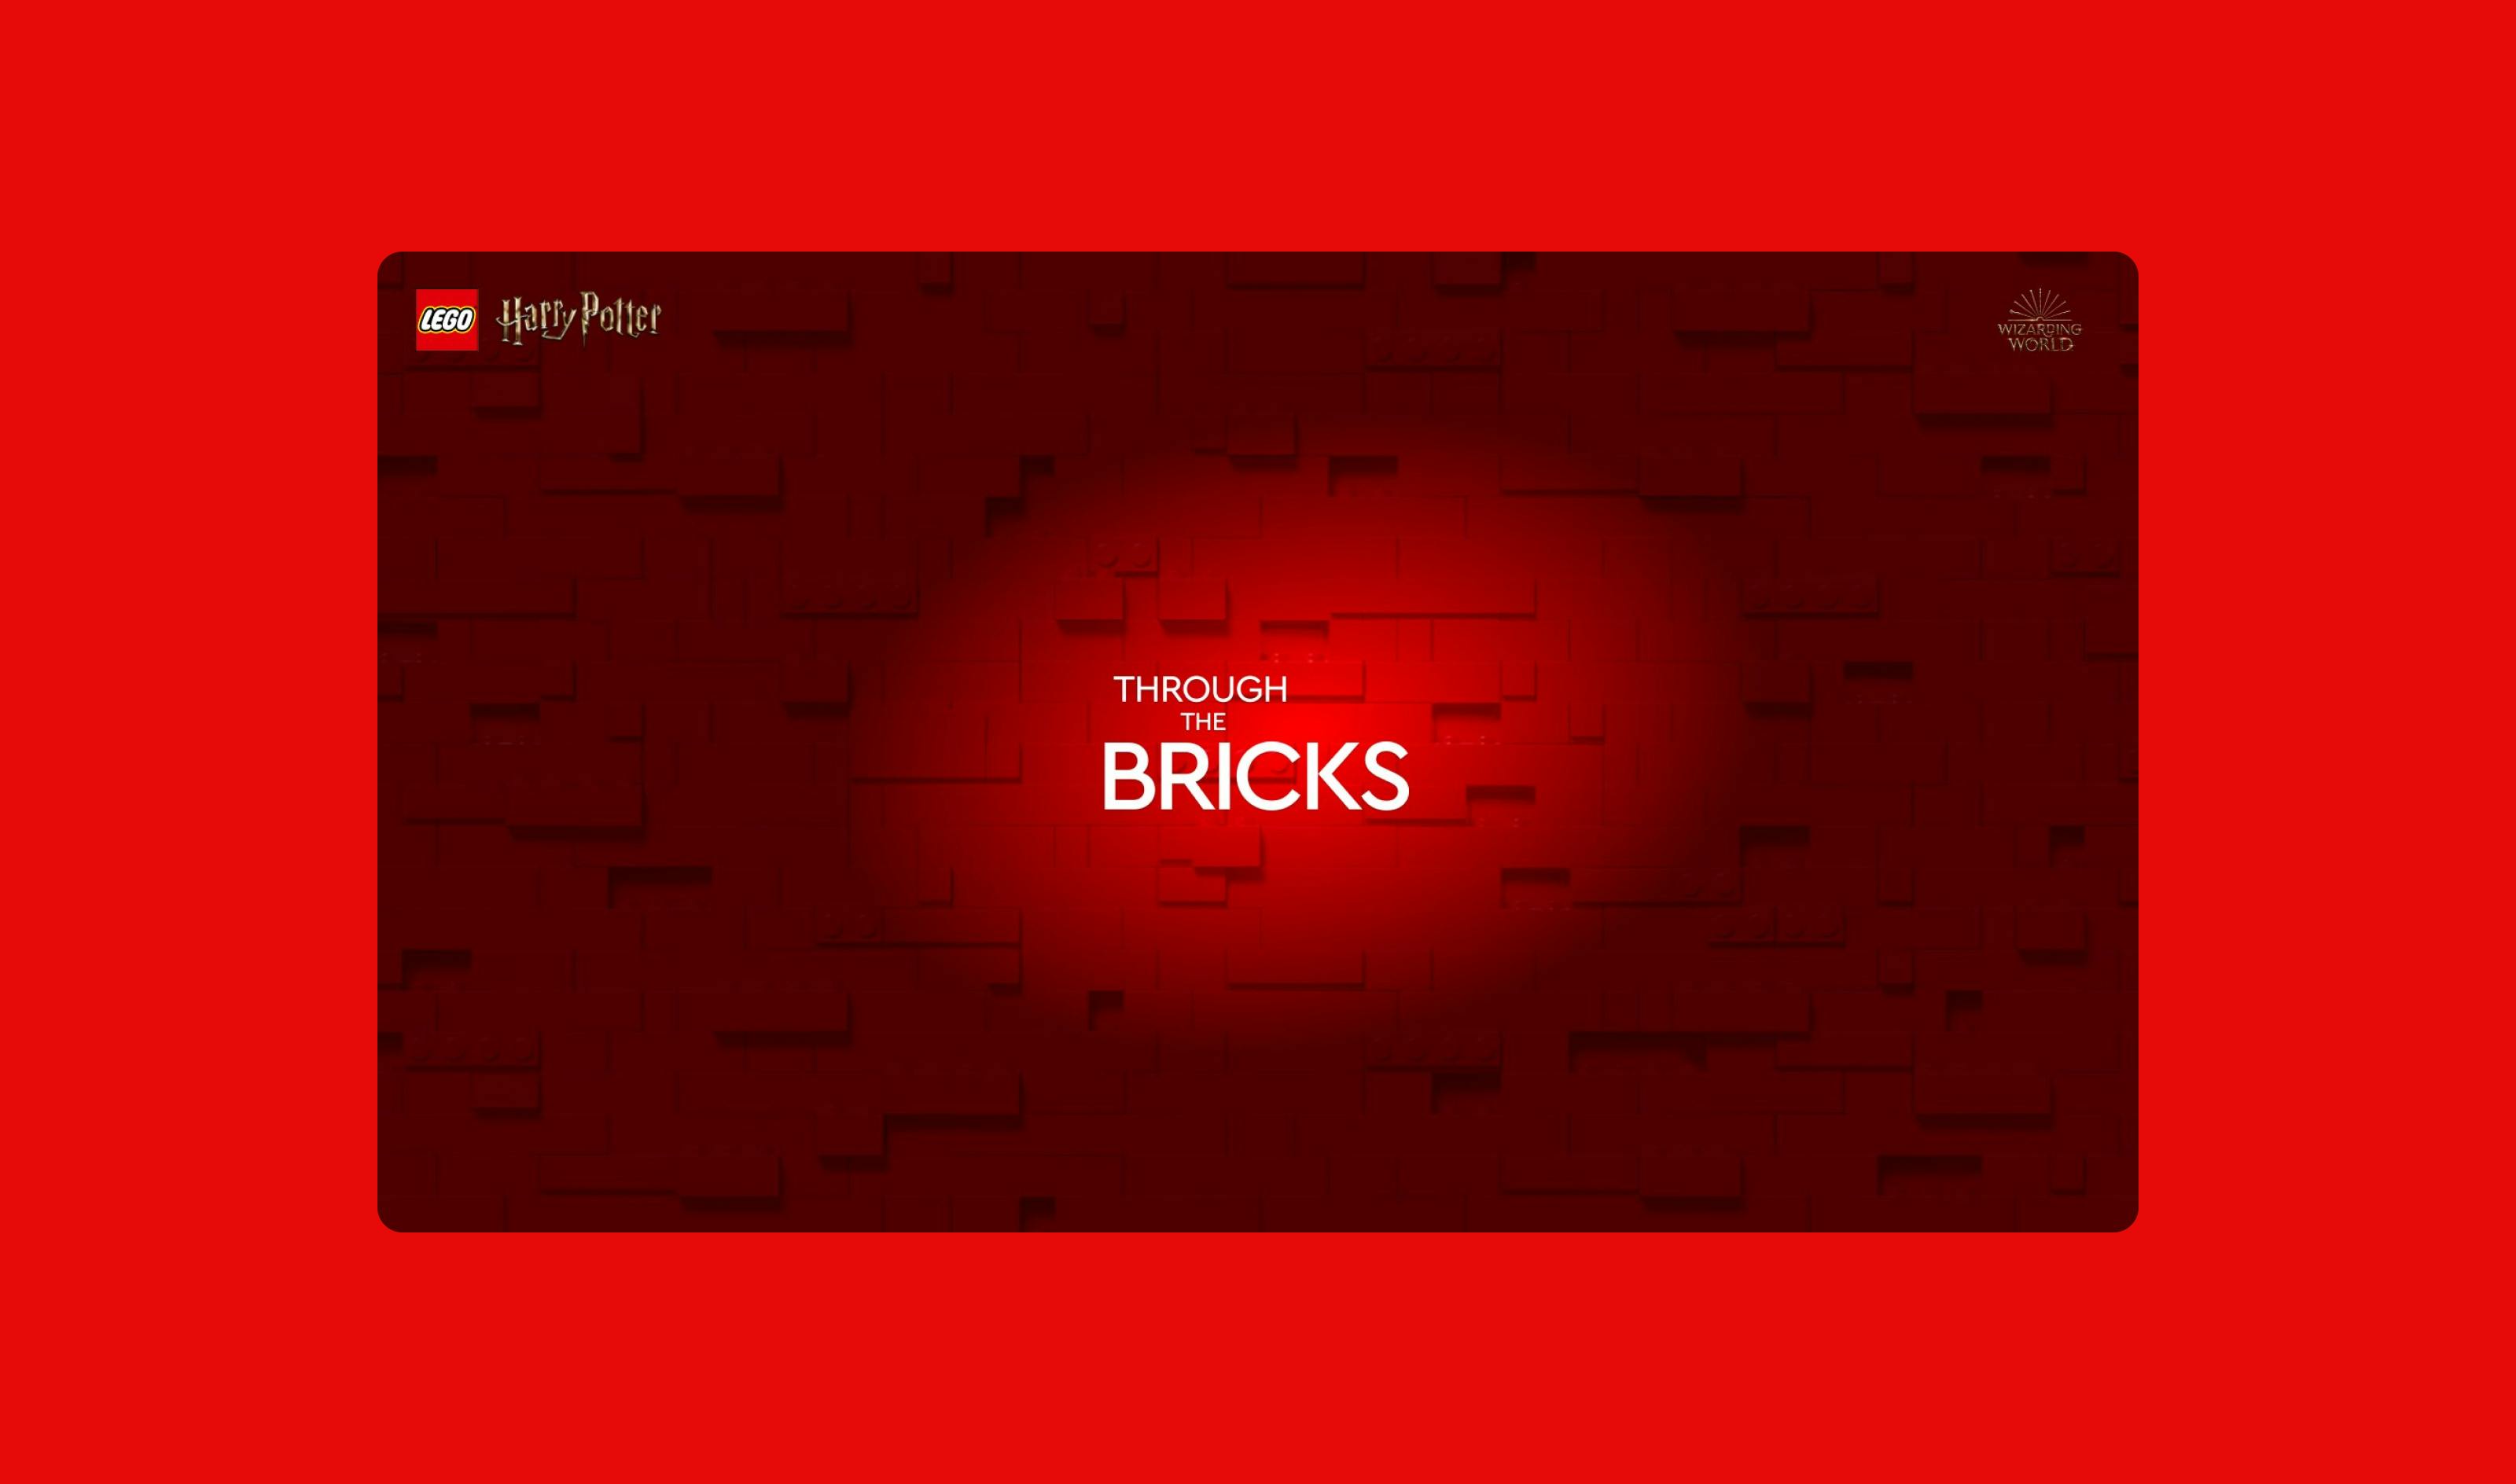 Through the Bricks intro screen